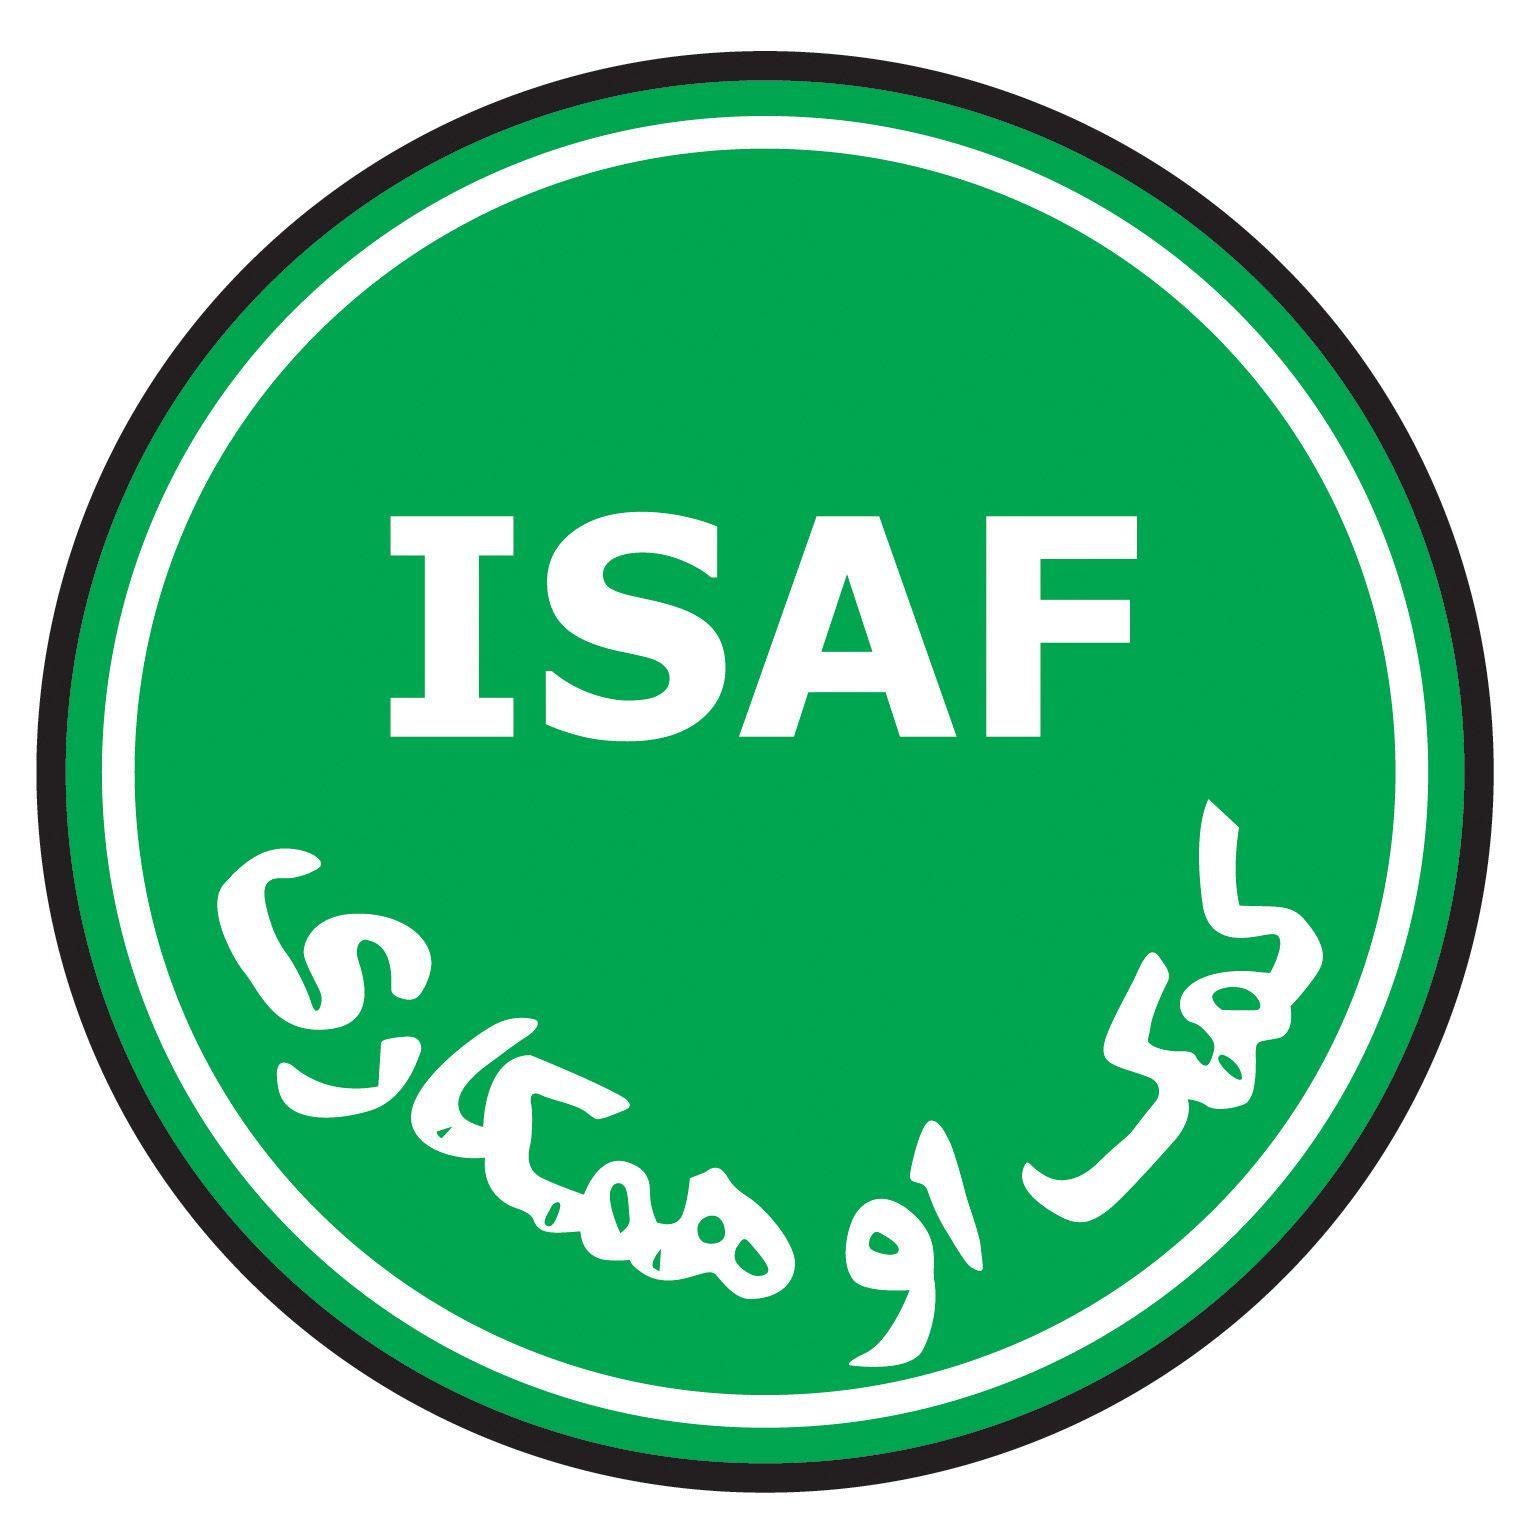 ISAF Logo - File:ISAF Logo 2010.jpg - Wikimedia Commons